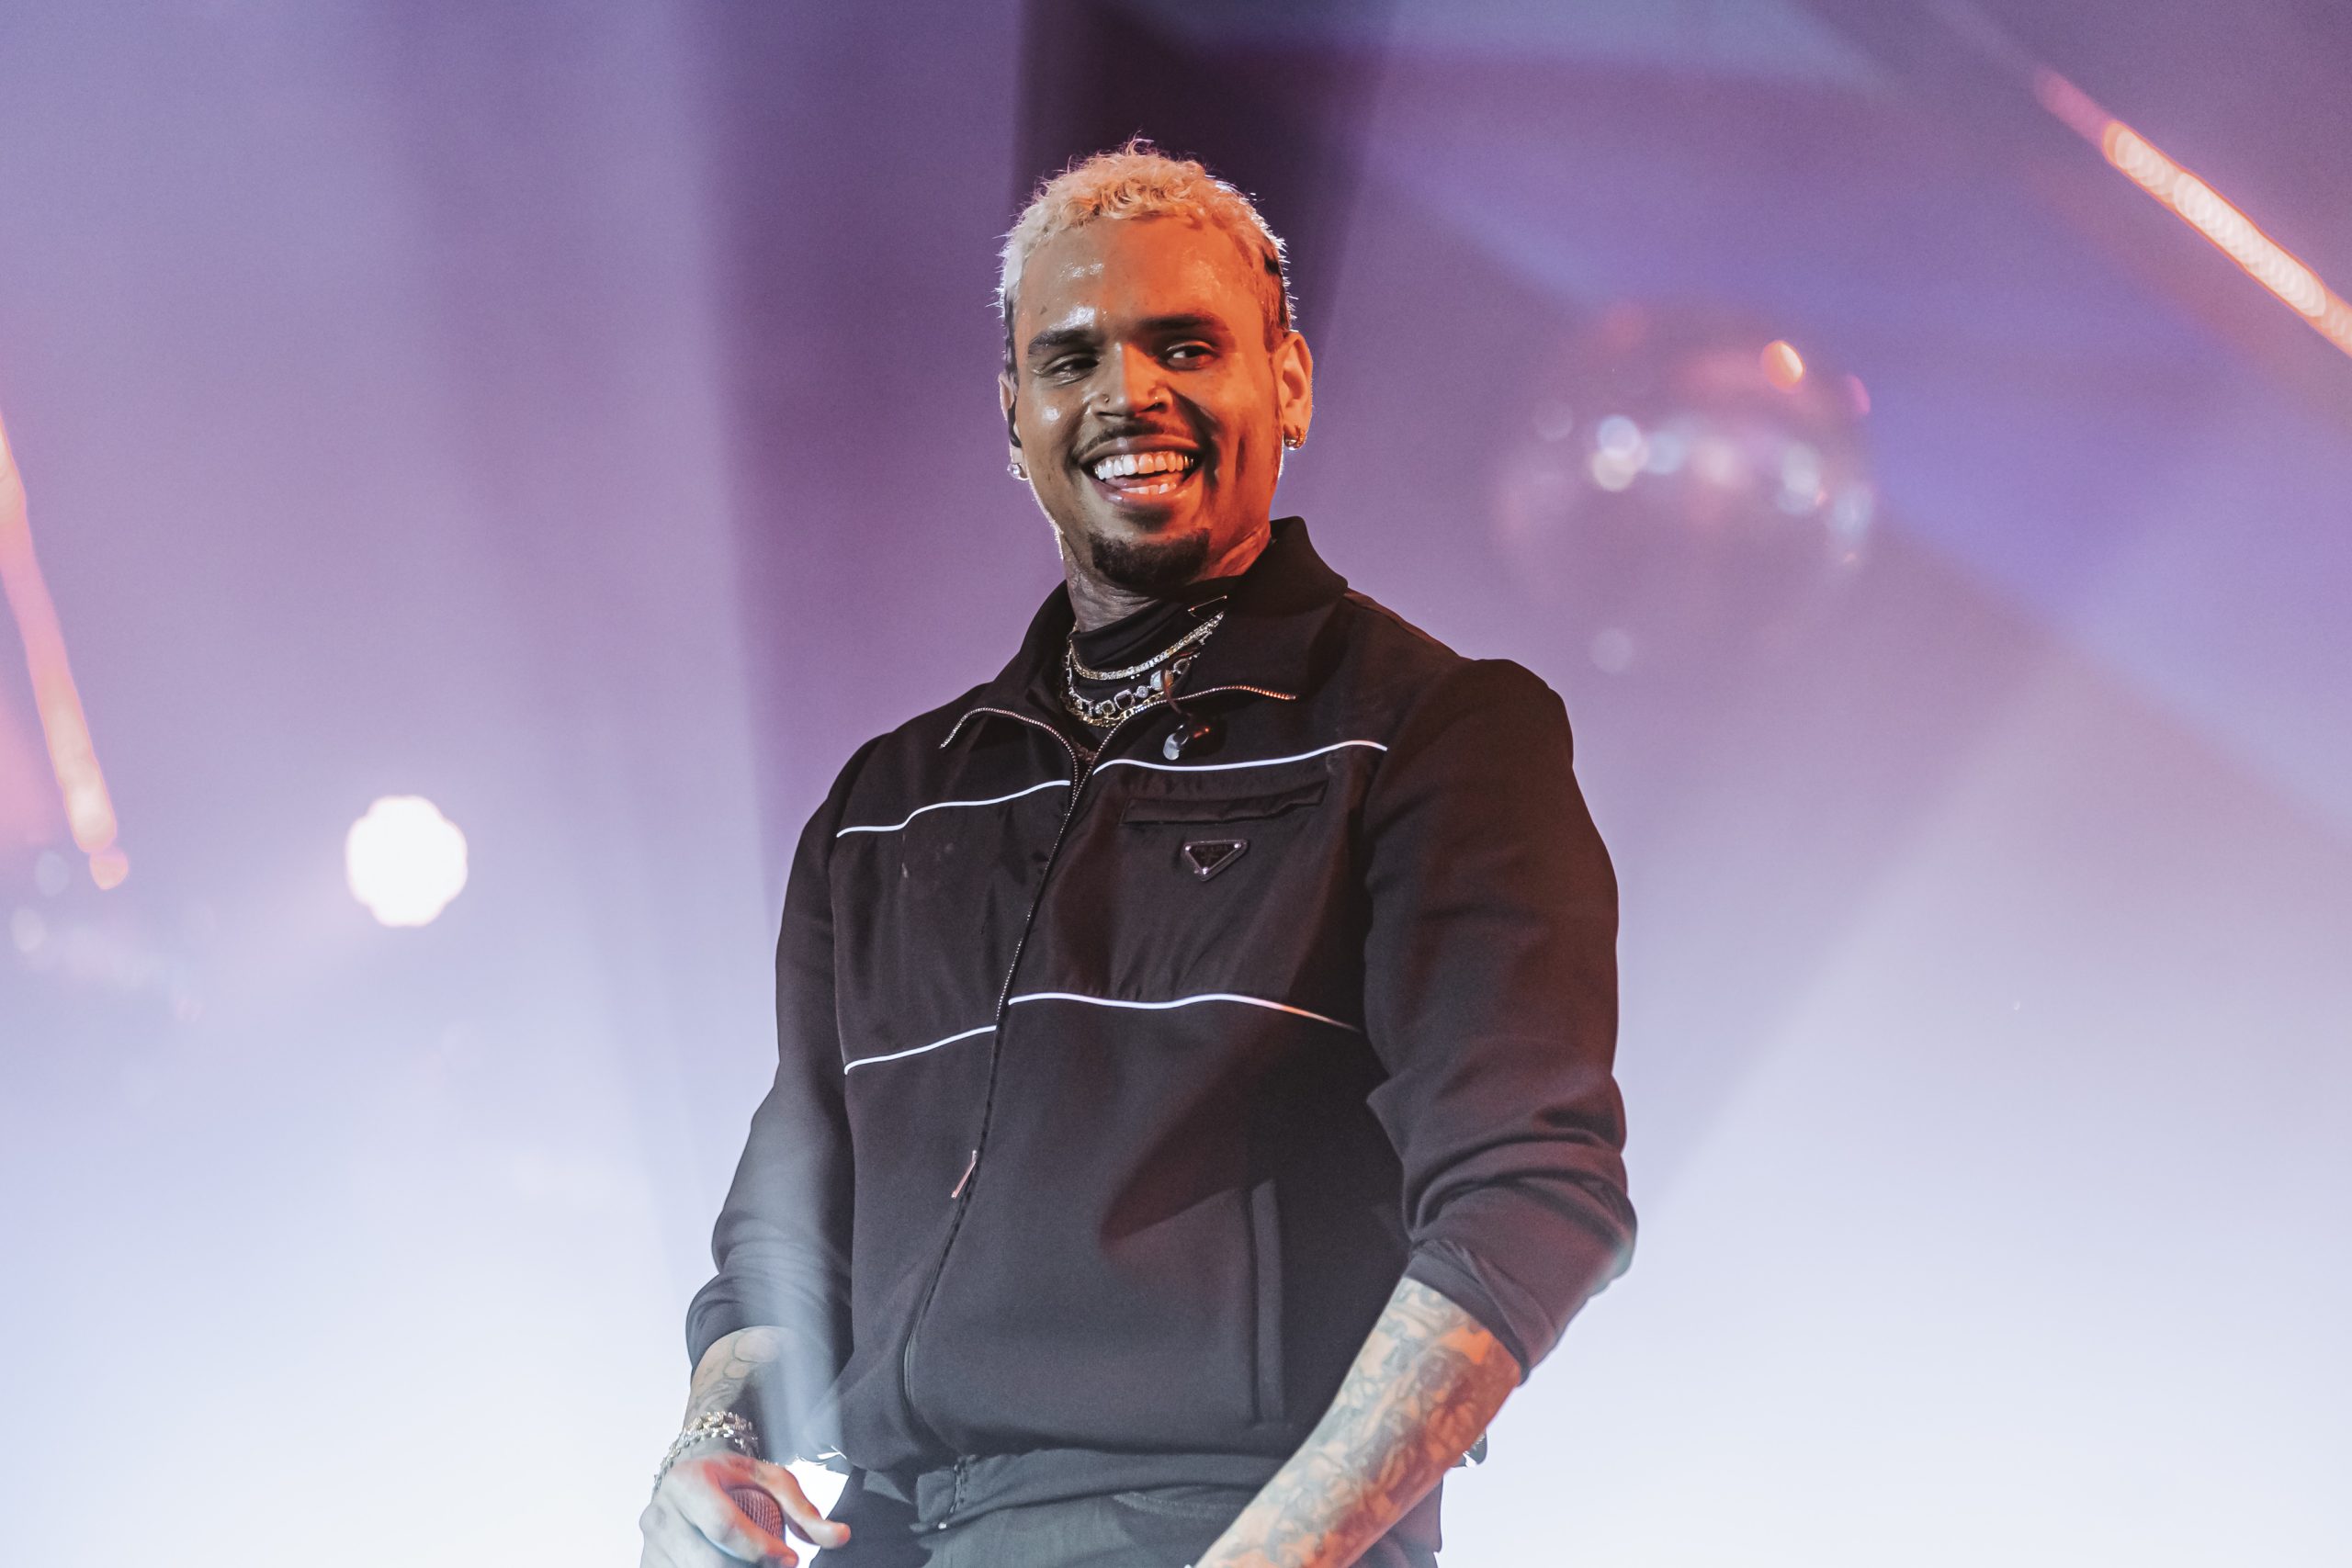 Chris Brown smiles at crowd during NYE performance at Drai's 12 31 22 credit Radis Denphutaraphrechar